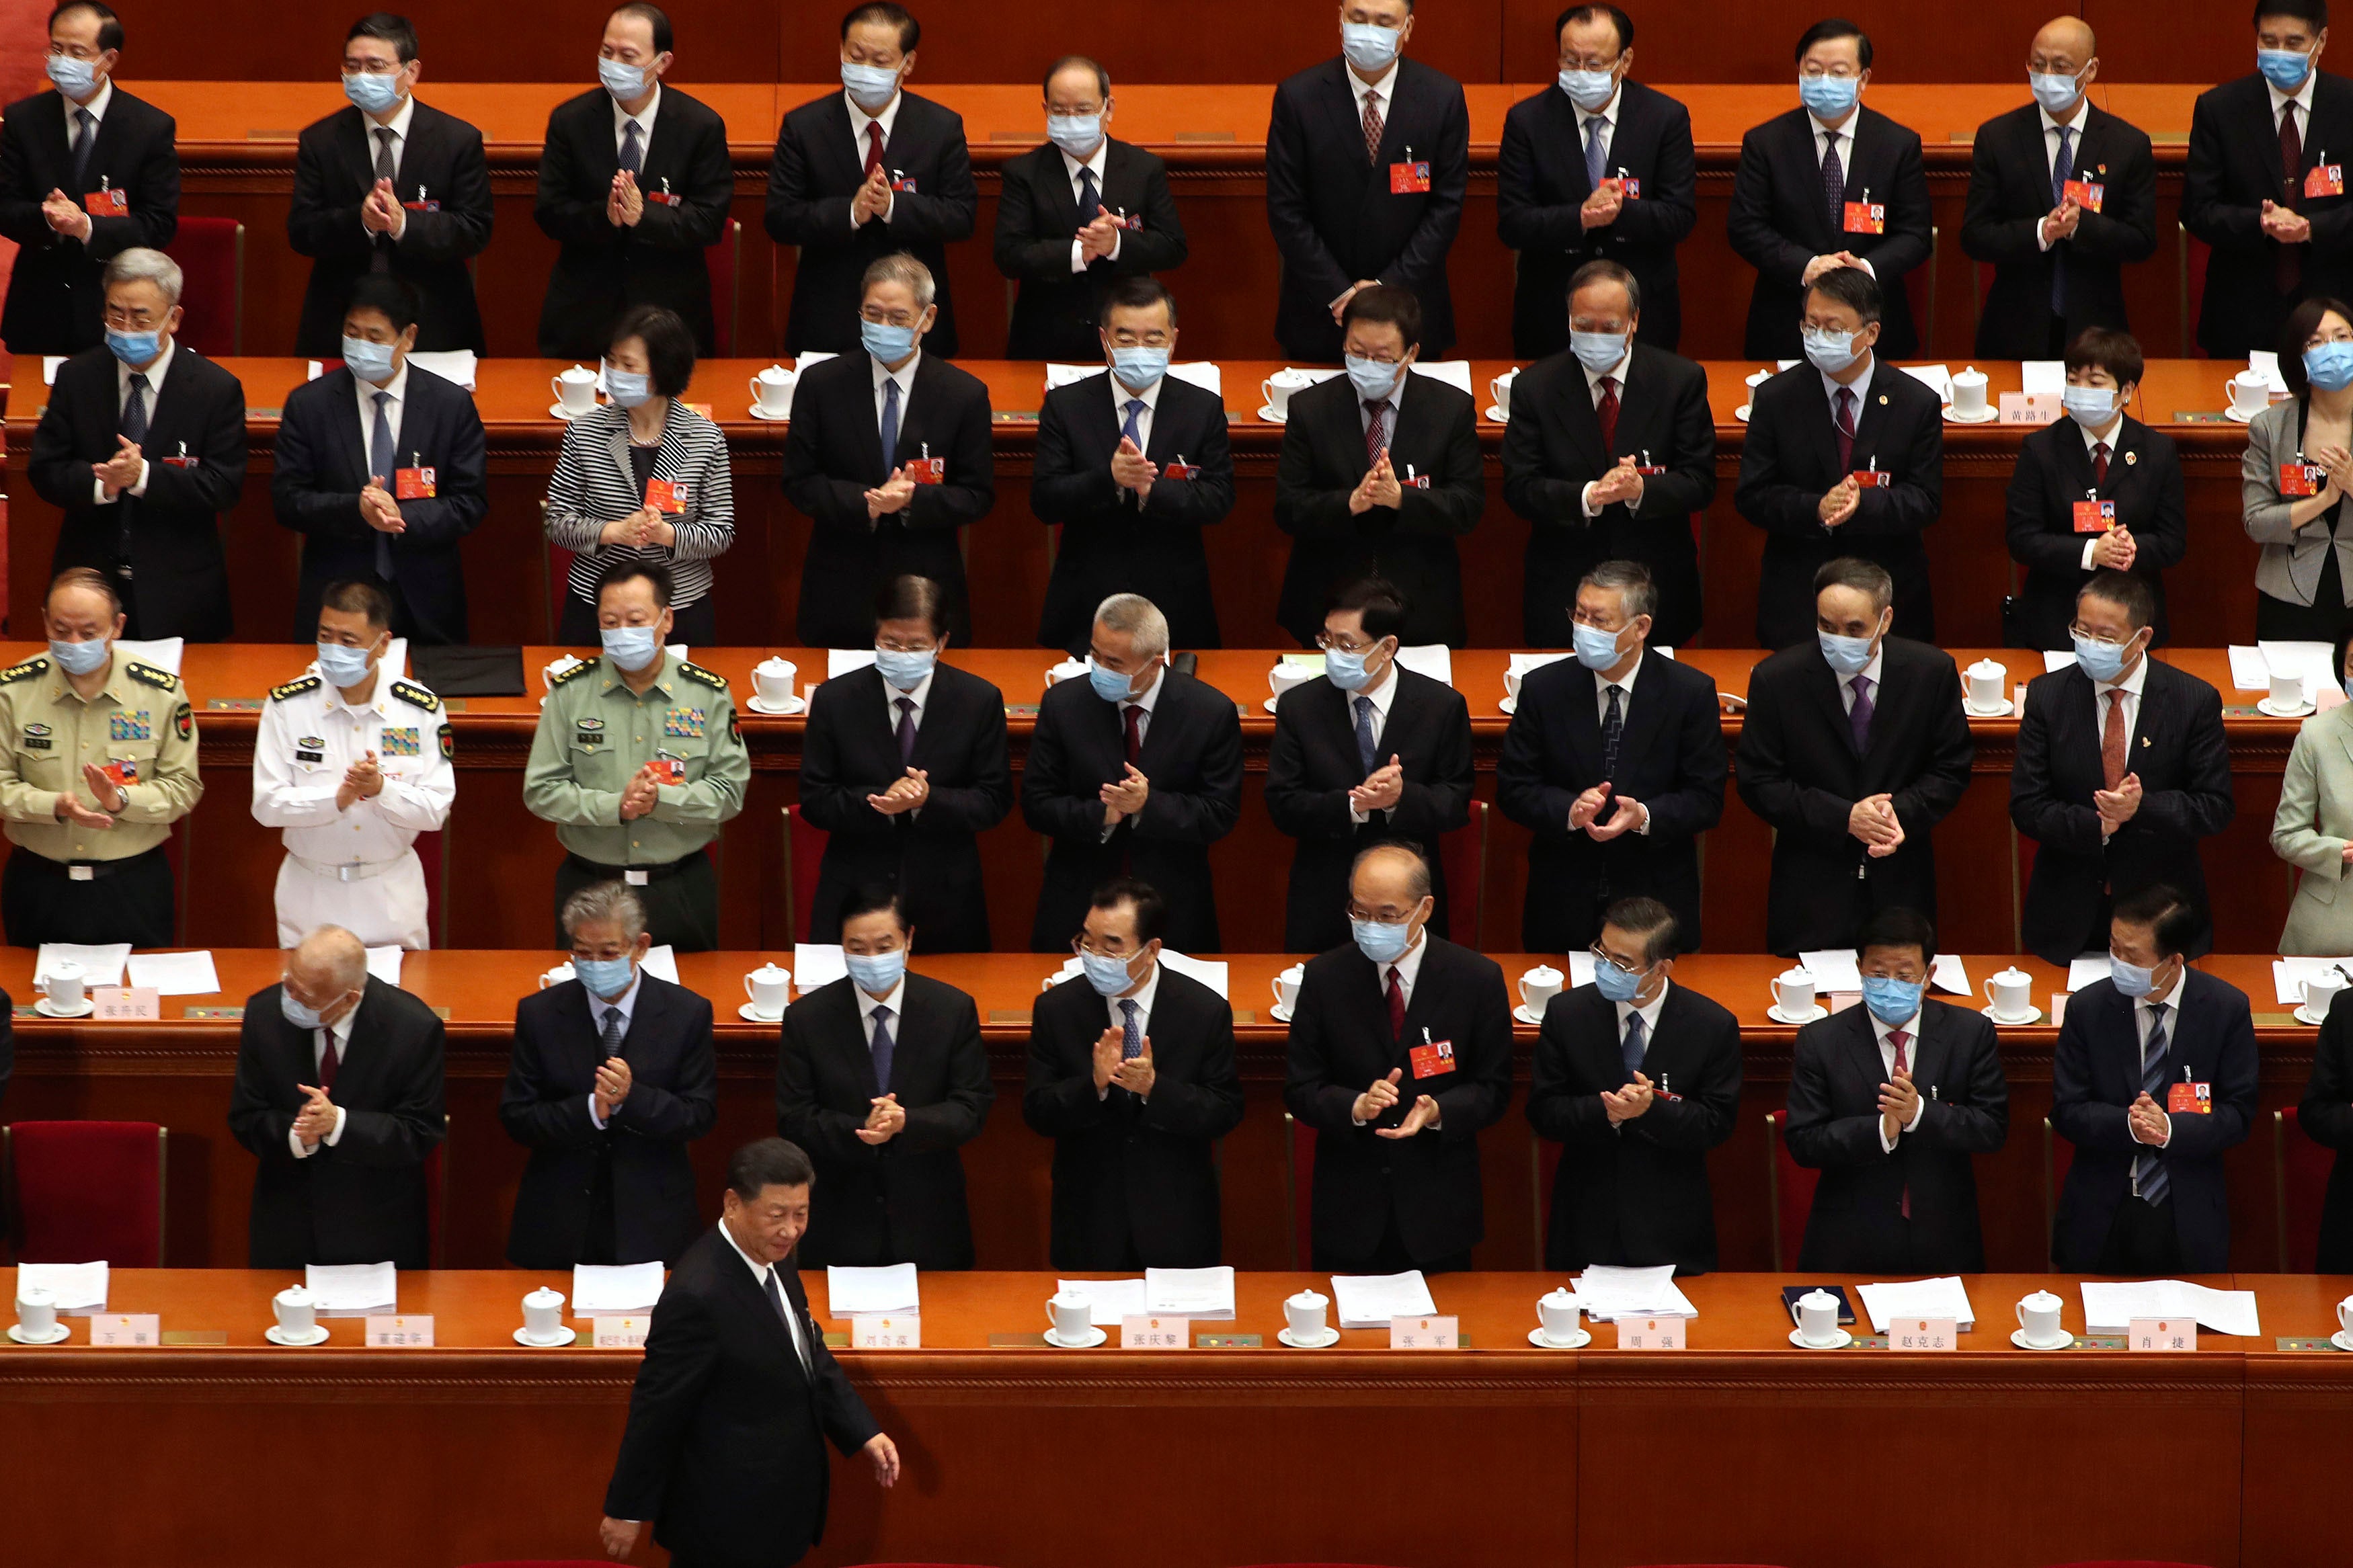 中国全国人民代表大会开幕式，与会者鼓掌欢迎国家主席习近平入场，中国北京人民大会堂，2020年5月22日。